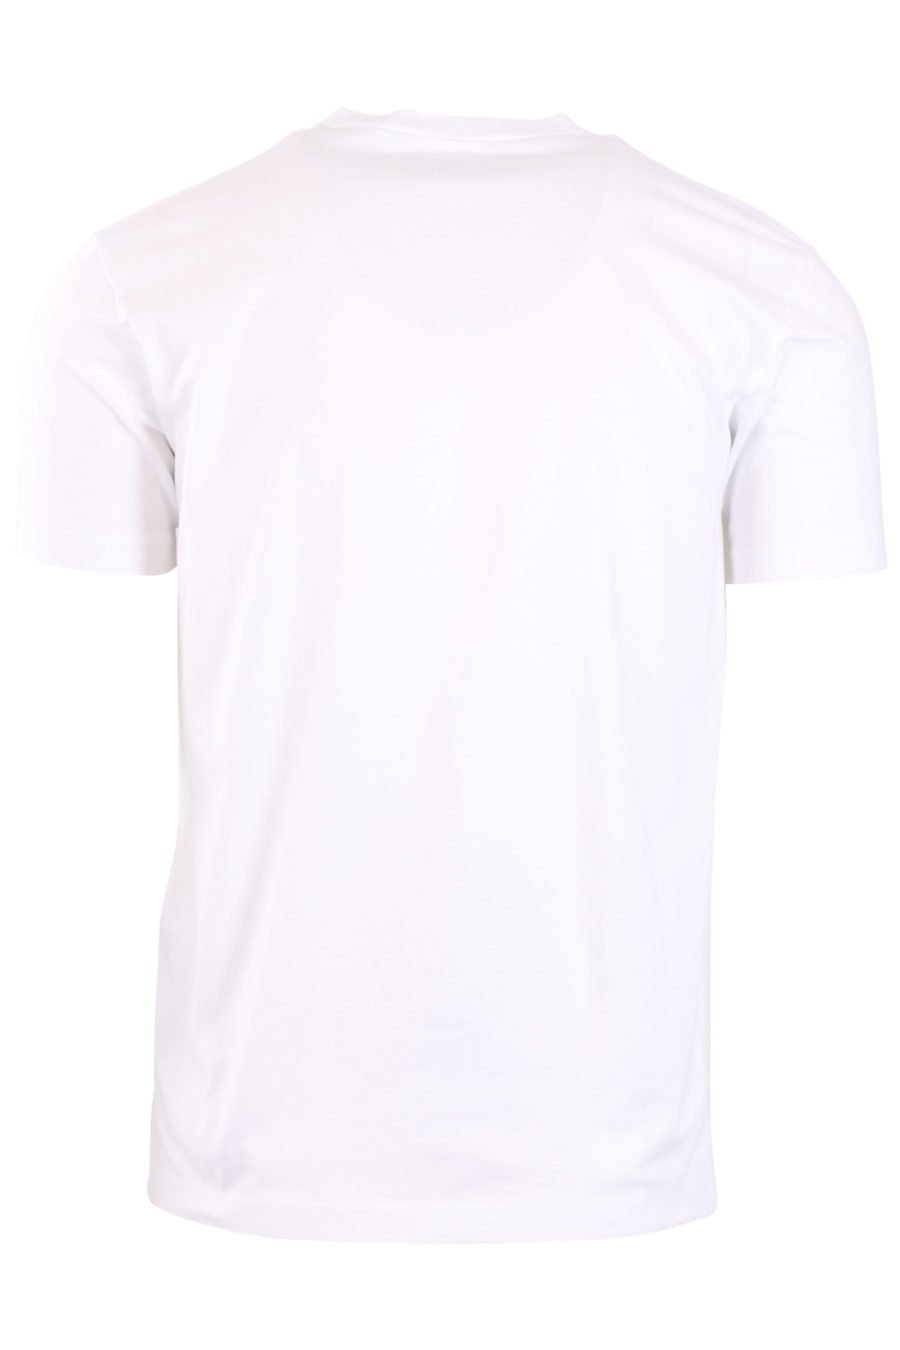 White short sleeve T-shirt "Ceresio" - IMG 9277